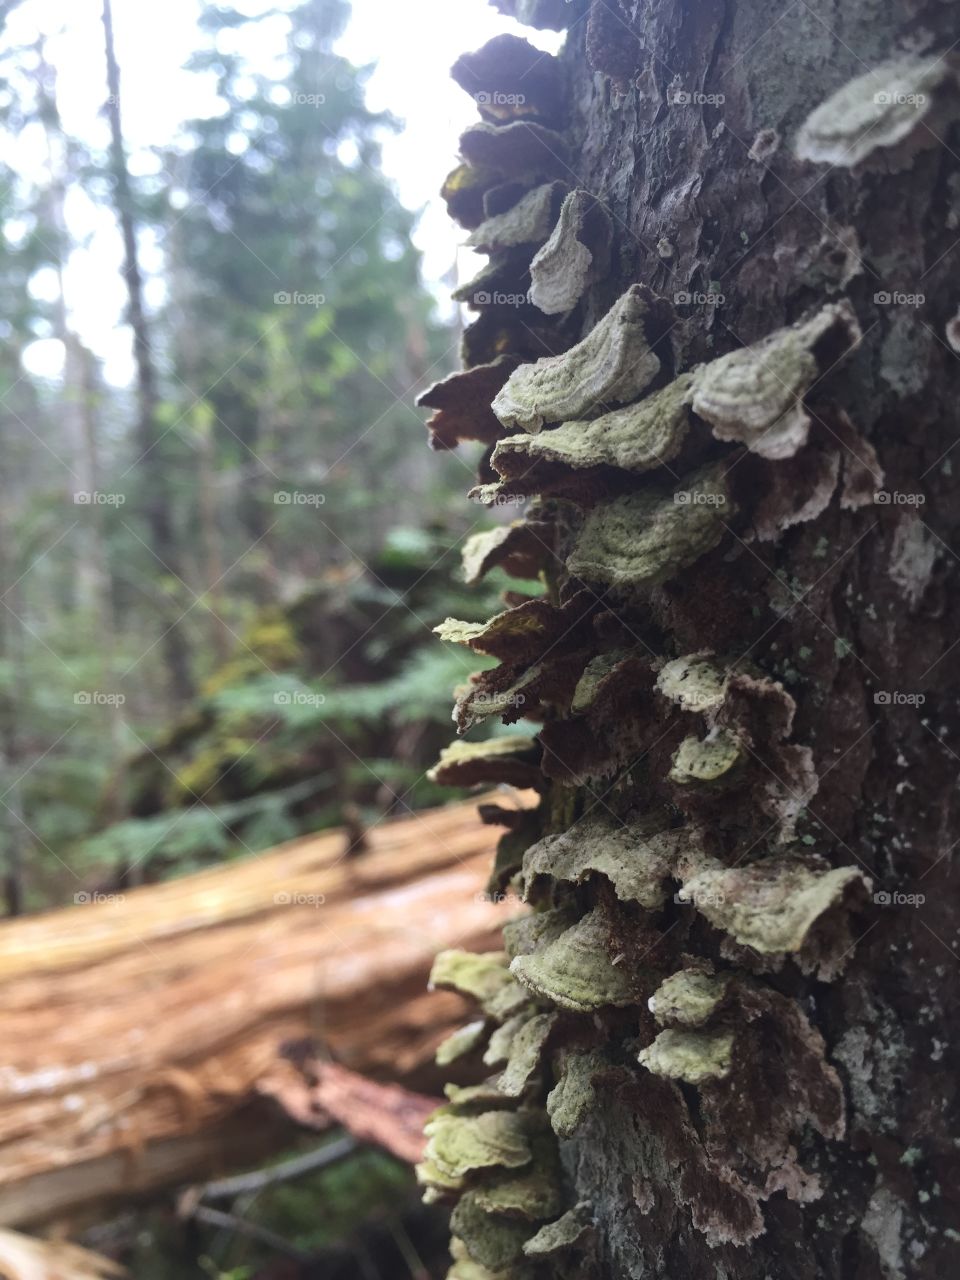 Mushroom on Tree
